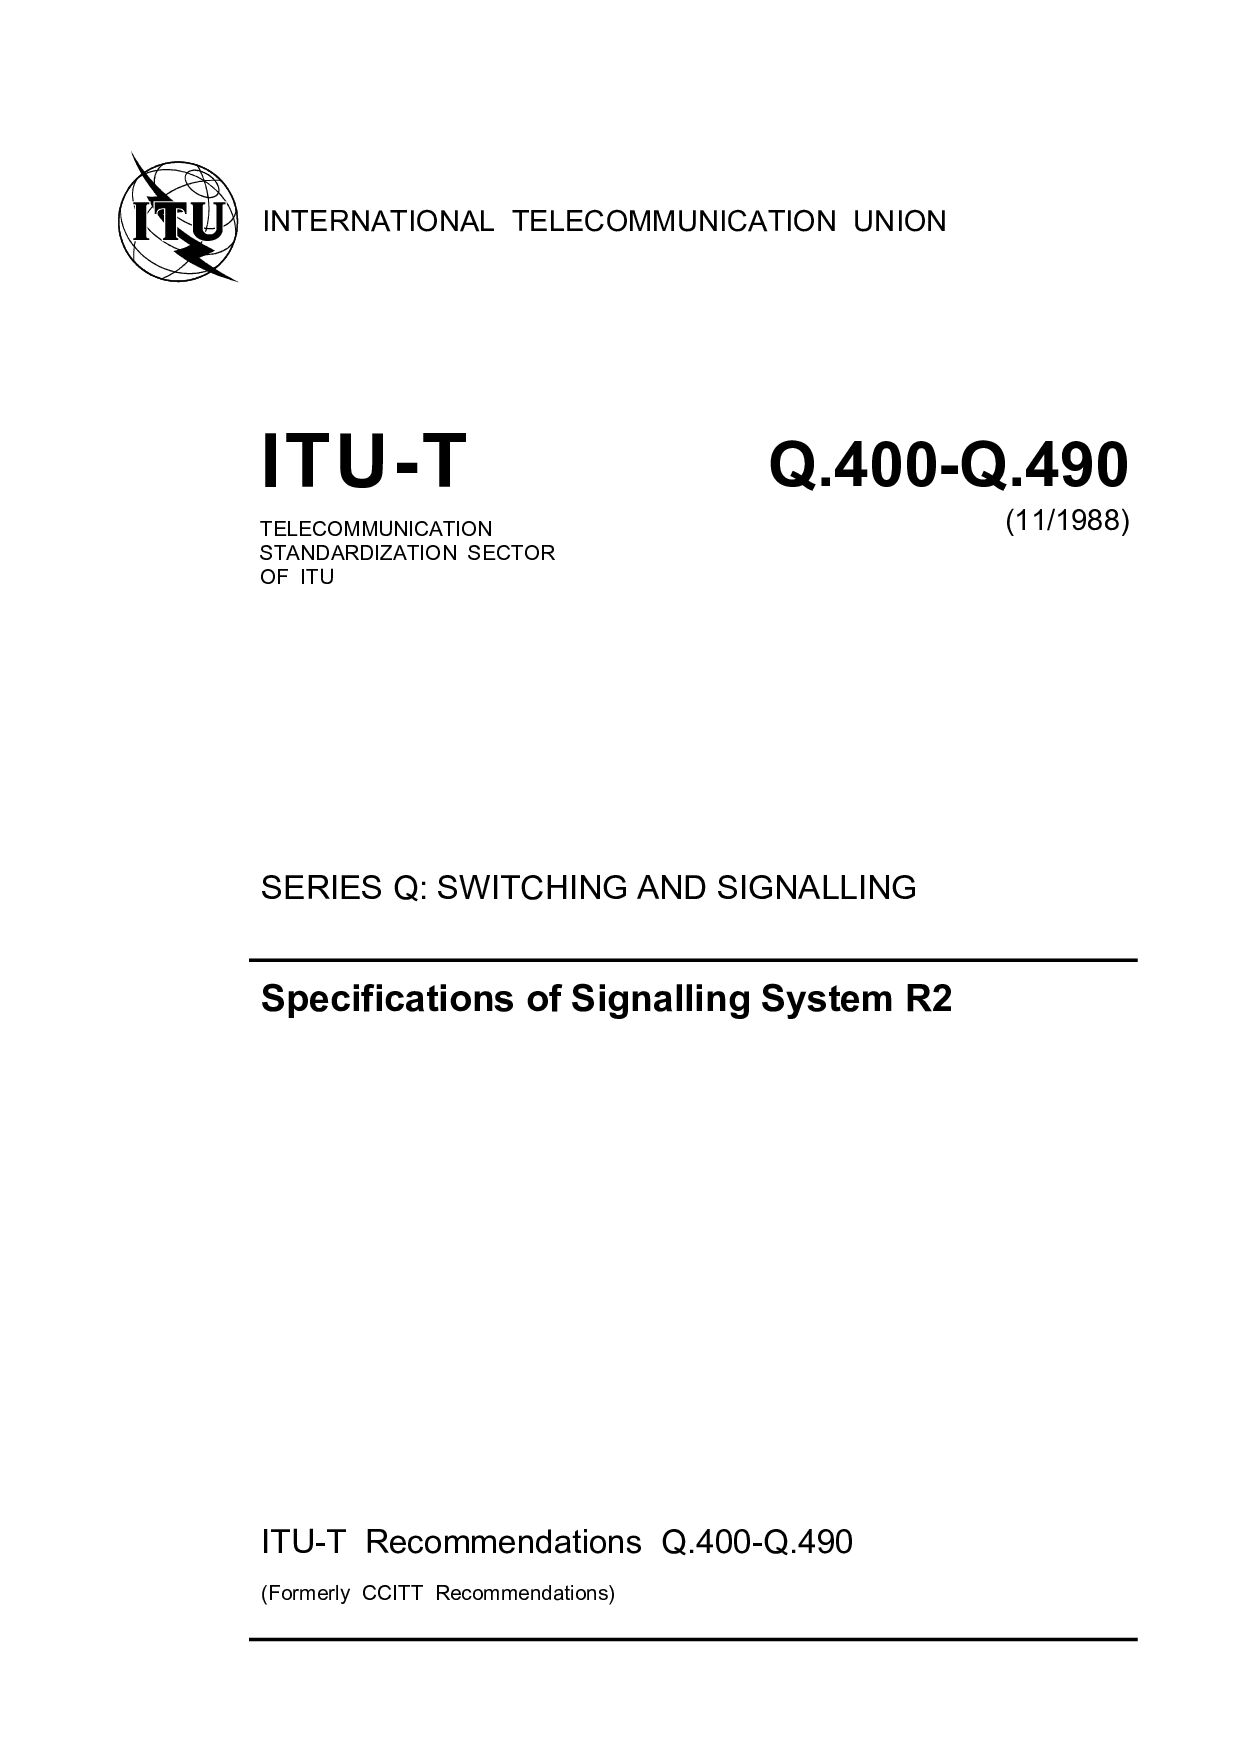 ITU-T Q.400-Q.490-1988